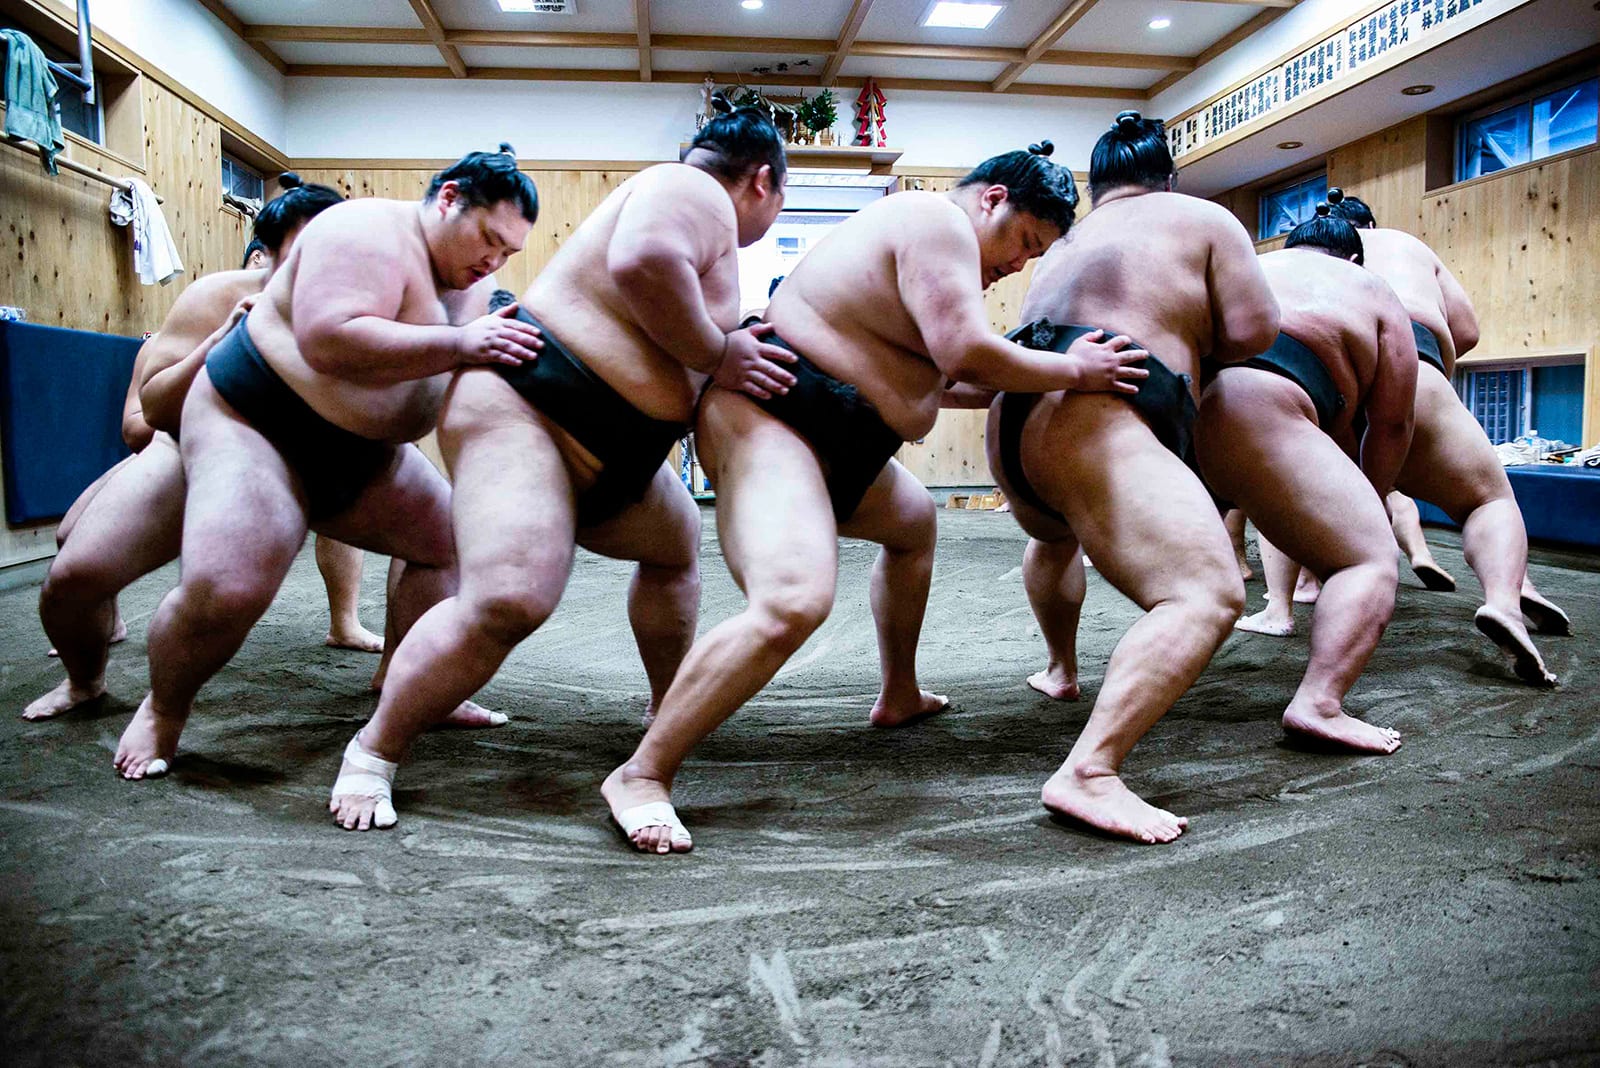 عالمٌ مُحاط بالسريّة..  مصور يُقدم لمحة نادرة عن مصارعي السومو في اليابان